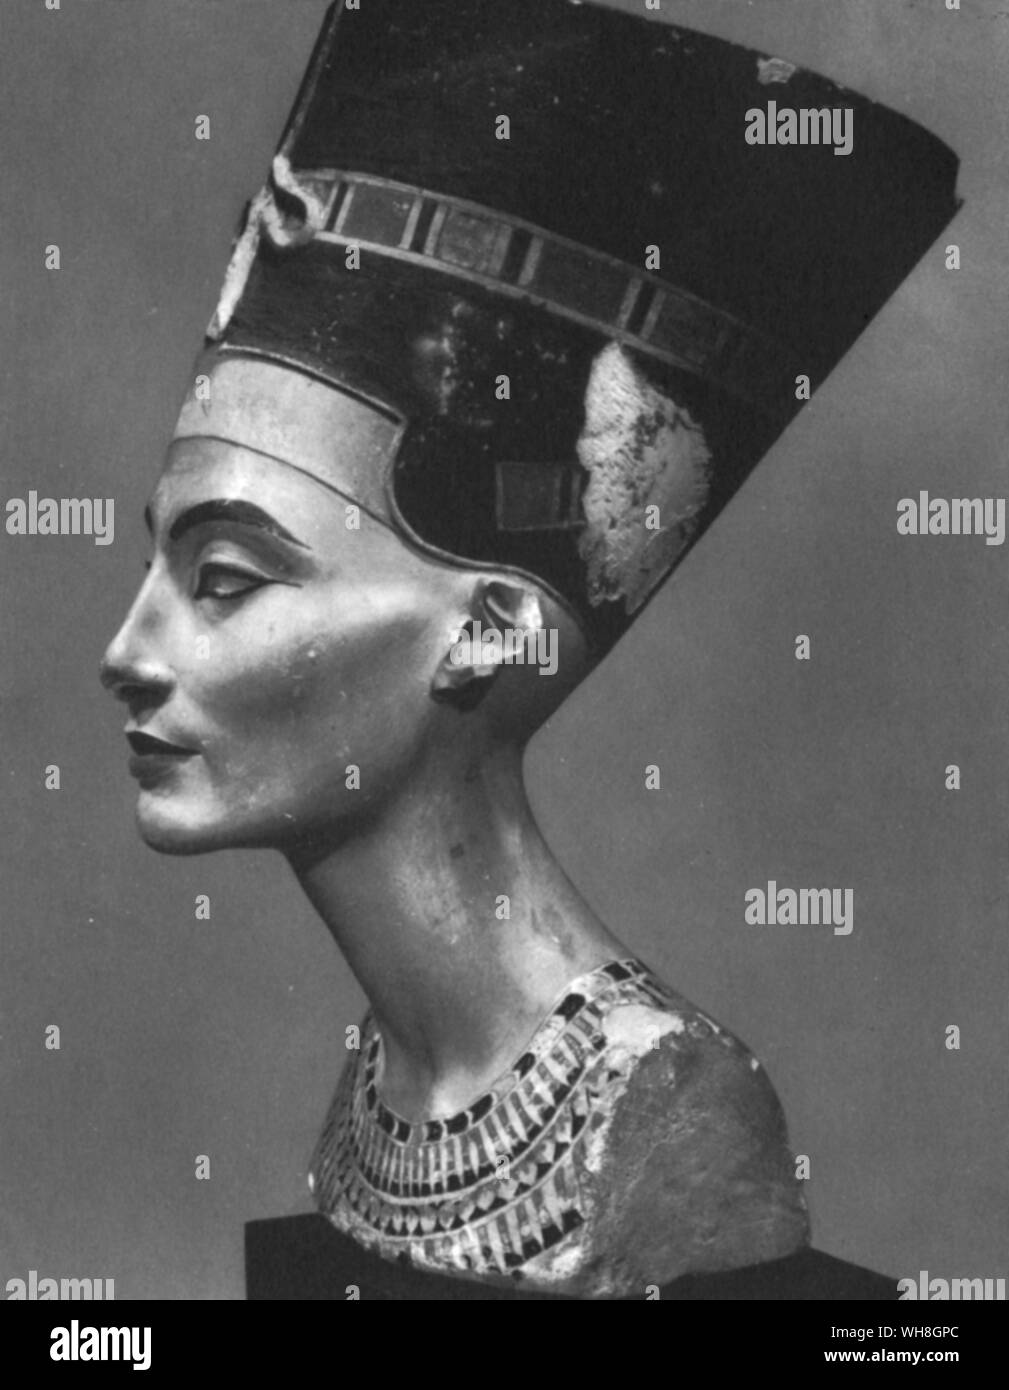 Busto della regina Nefertiti. Nefertiti era la moglie del faraone Amenhotep IV (dopo Akhenaton), e la madre-in-legge del faraone Tutankhamon. Il suo nome si traduce approssimativamente per la bella è venuto. Il busto è uno dei più copiati opere di antico Egitto. Essa è stata attribuita allo scultore Djhutmose, ed è stato trovato nella sua bottega. I tesori di Tutankhamon. Tutankhamon da Christiane Desroches Noblecourt, pagina 105. Foto Stock